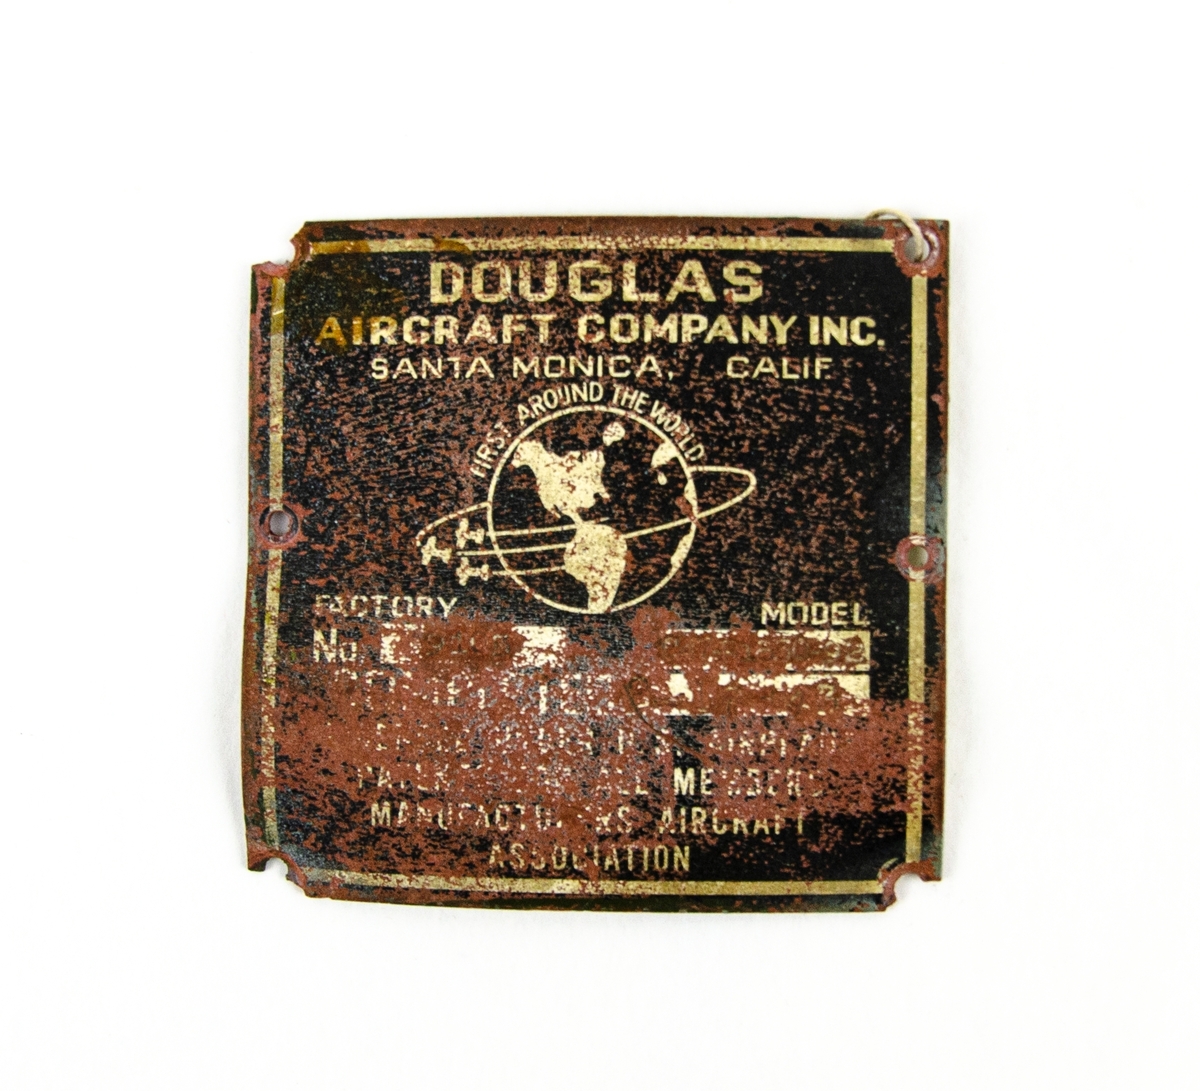 Tillverkningsskylt för flygplan. Svart bakgrund med vitgul text. Skylt och text är nött av tidens tand. Tillverkare är Douglas Aircraft Company, Santa Monica, Kalifornien.